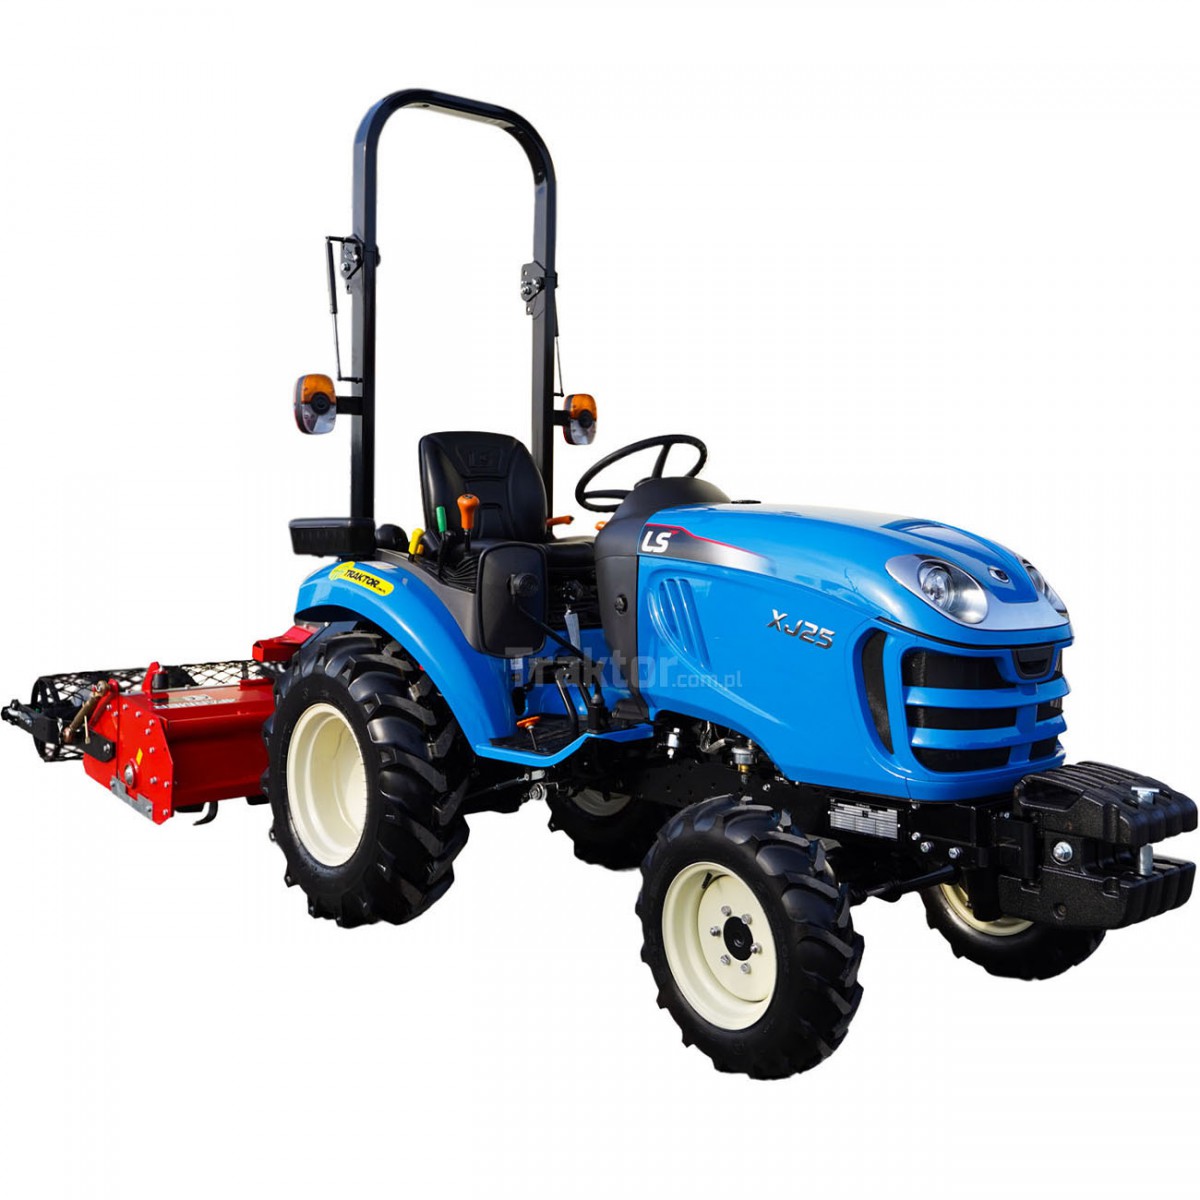 LS Traktor XJ25 MEC 4x4 - 24,4 HP + separační kultivátor SB 125 4FARMER